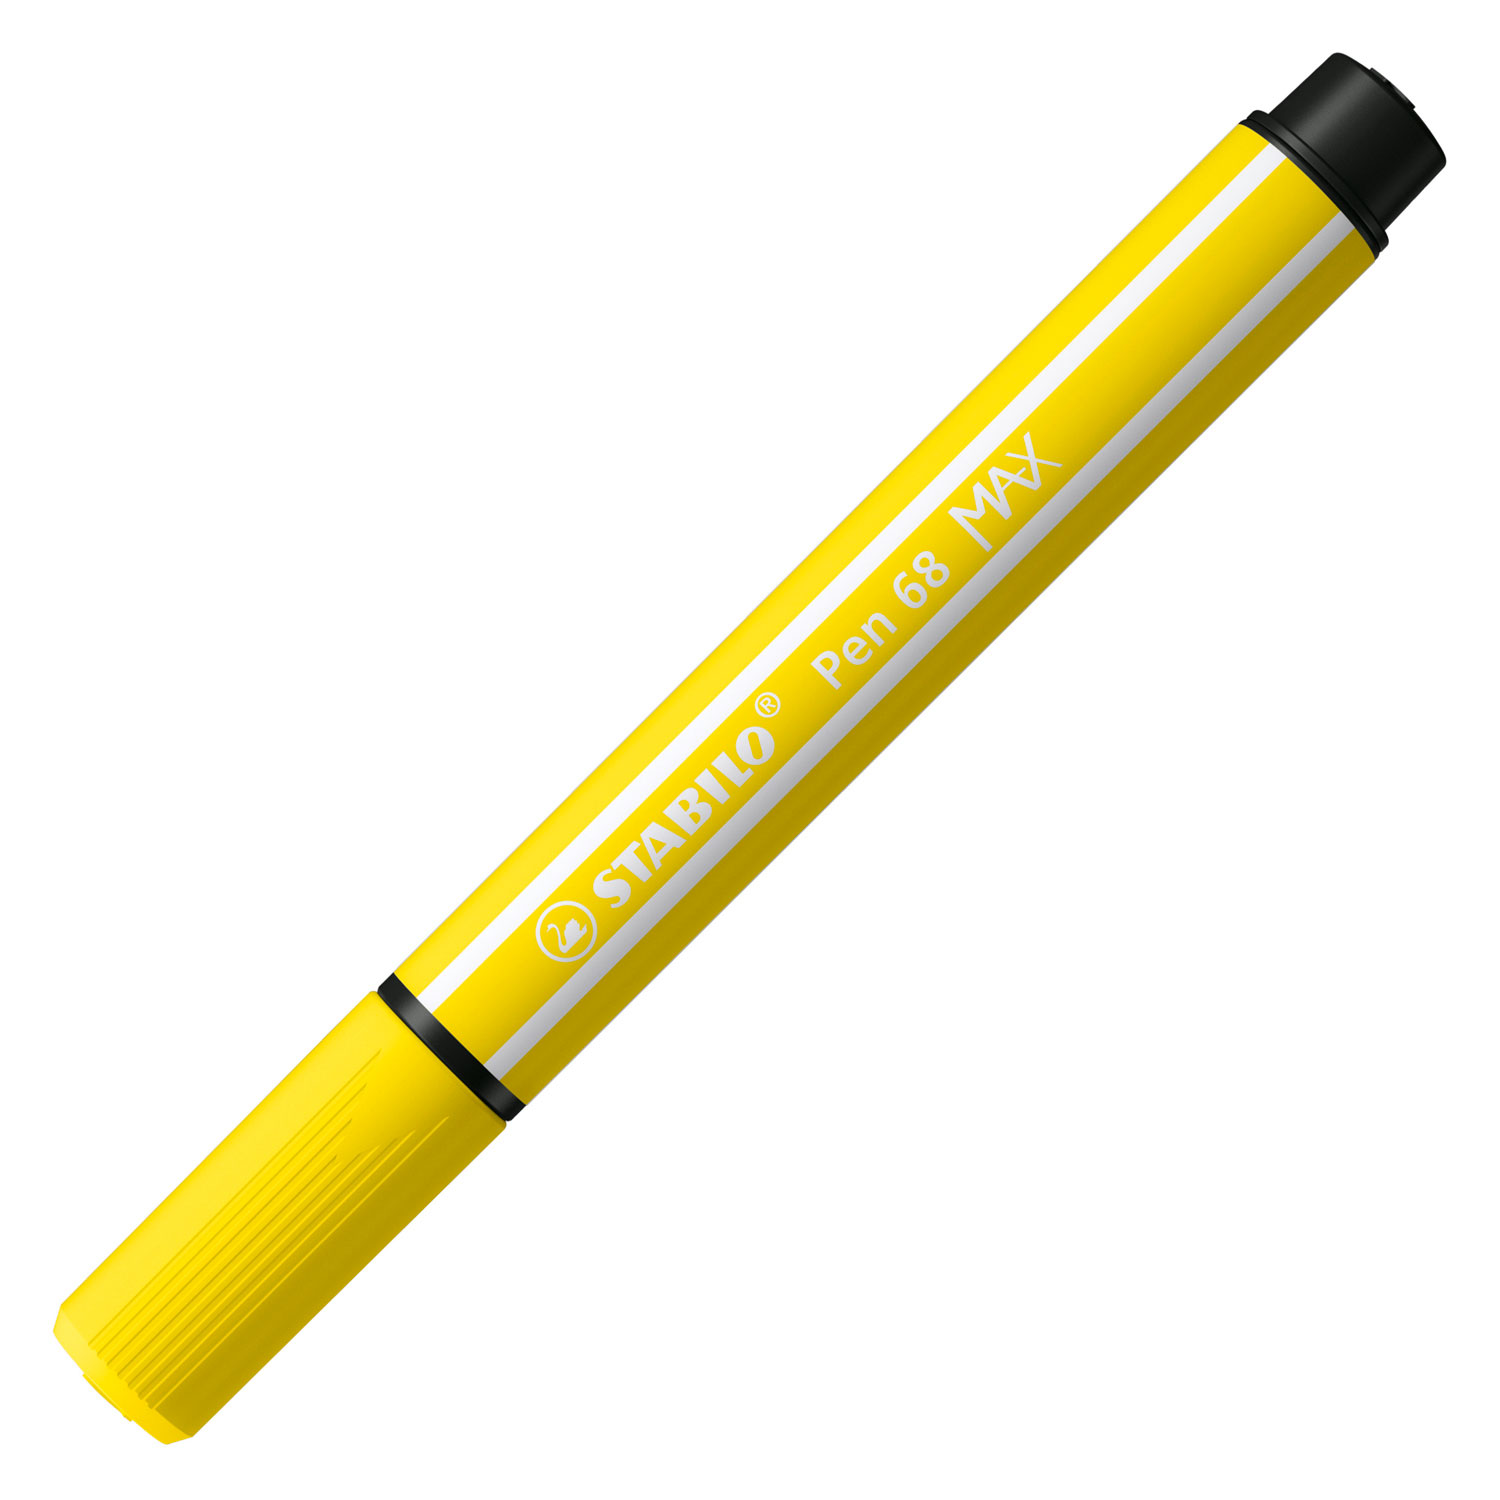 STABILO Pen 68 MAX ARTY - Feutre à pointe biseautée épaisse - Lot de 24 pièces